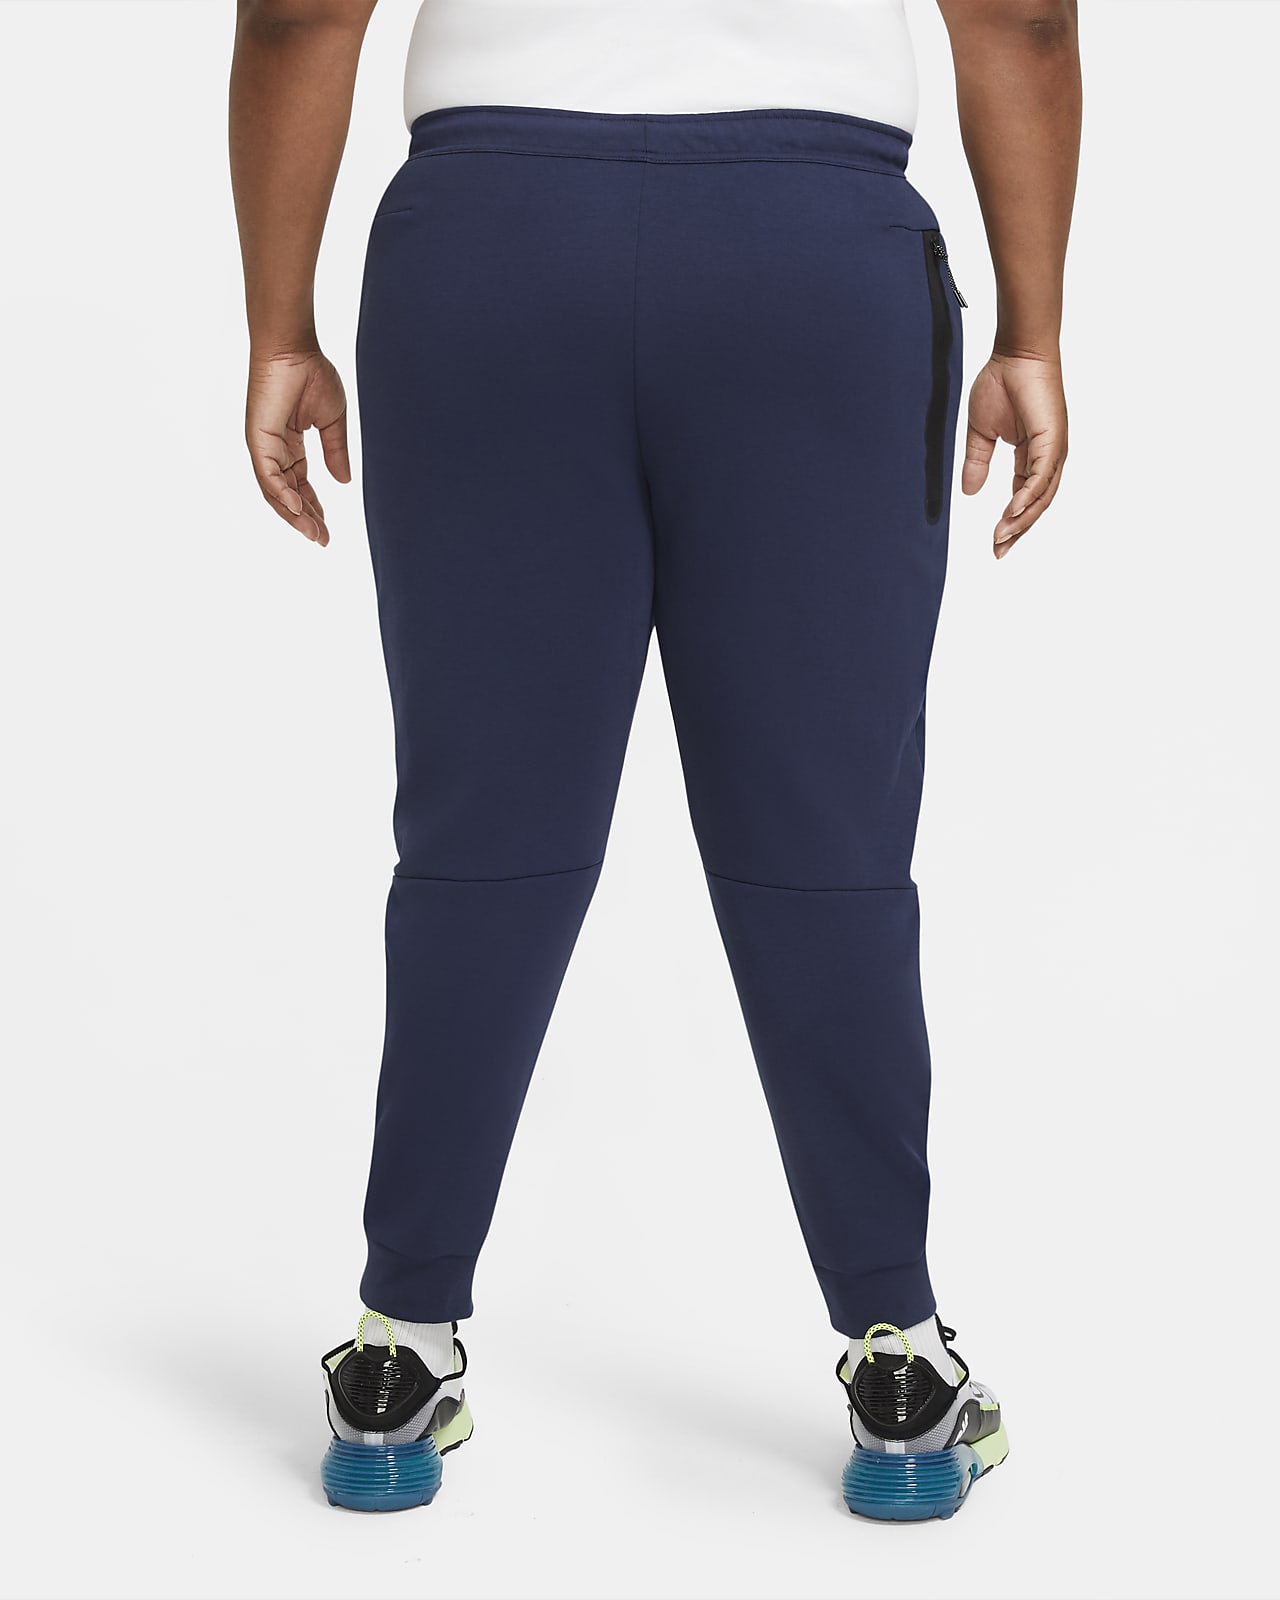 Sweatpants Nike Sportswear Tech Fleece Sweatpanst cu4495-330